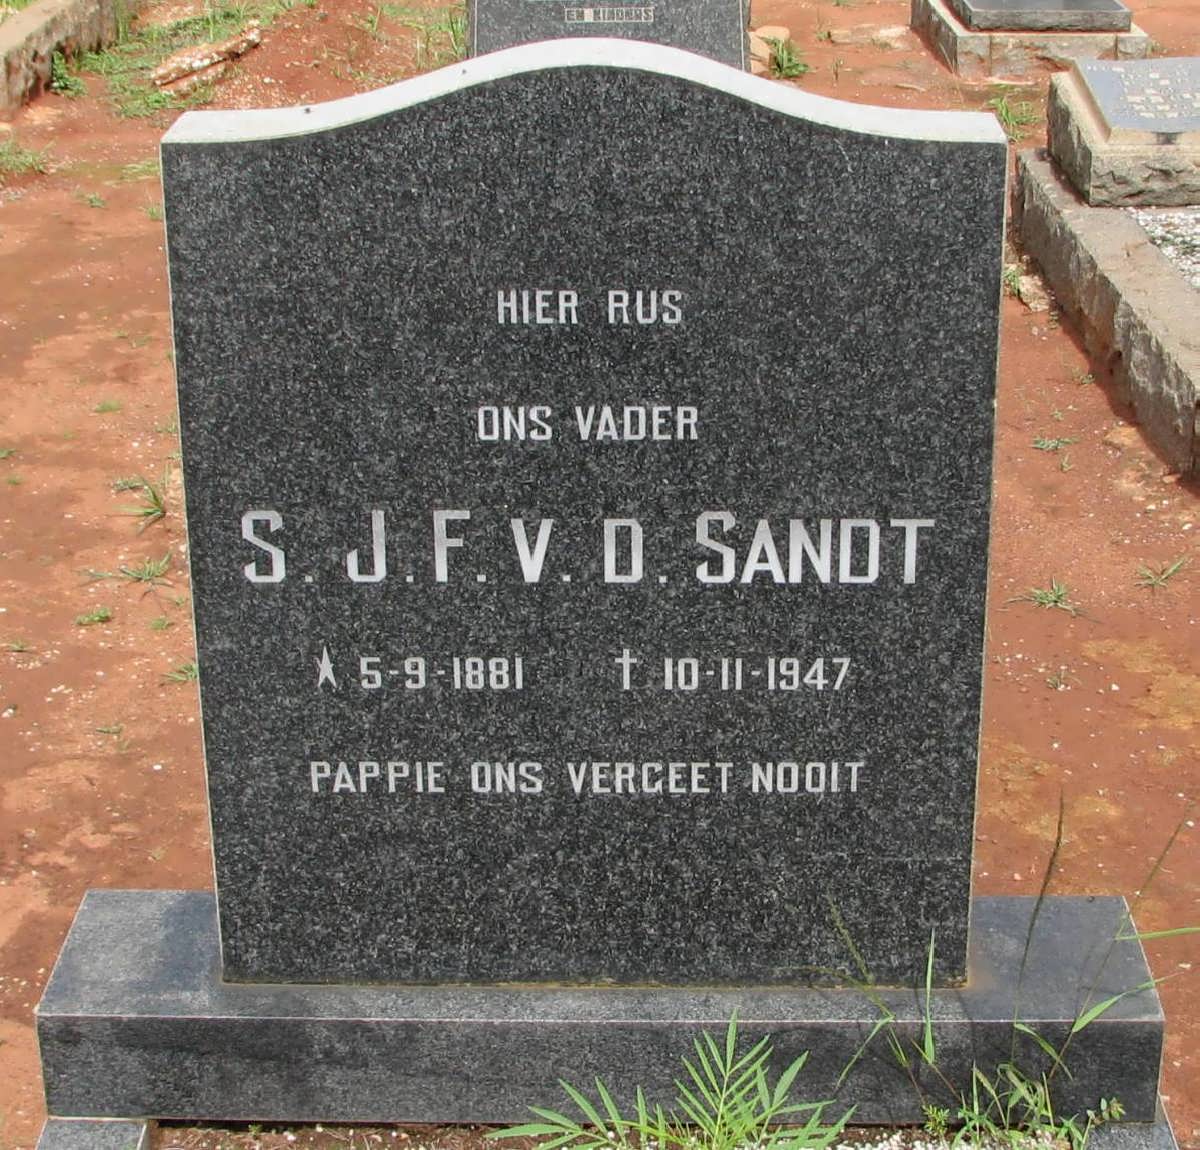 SANDT S.J.F., v.d. 1881-1947